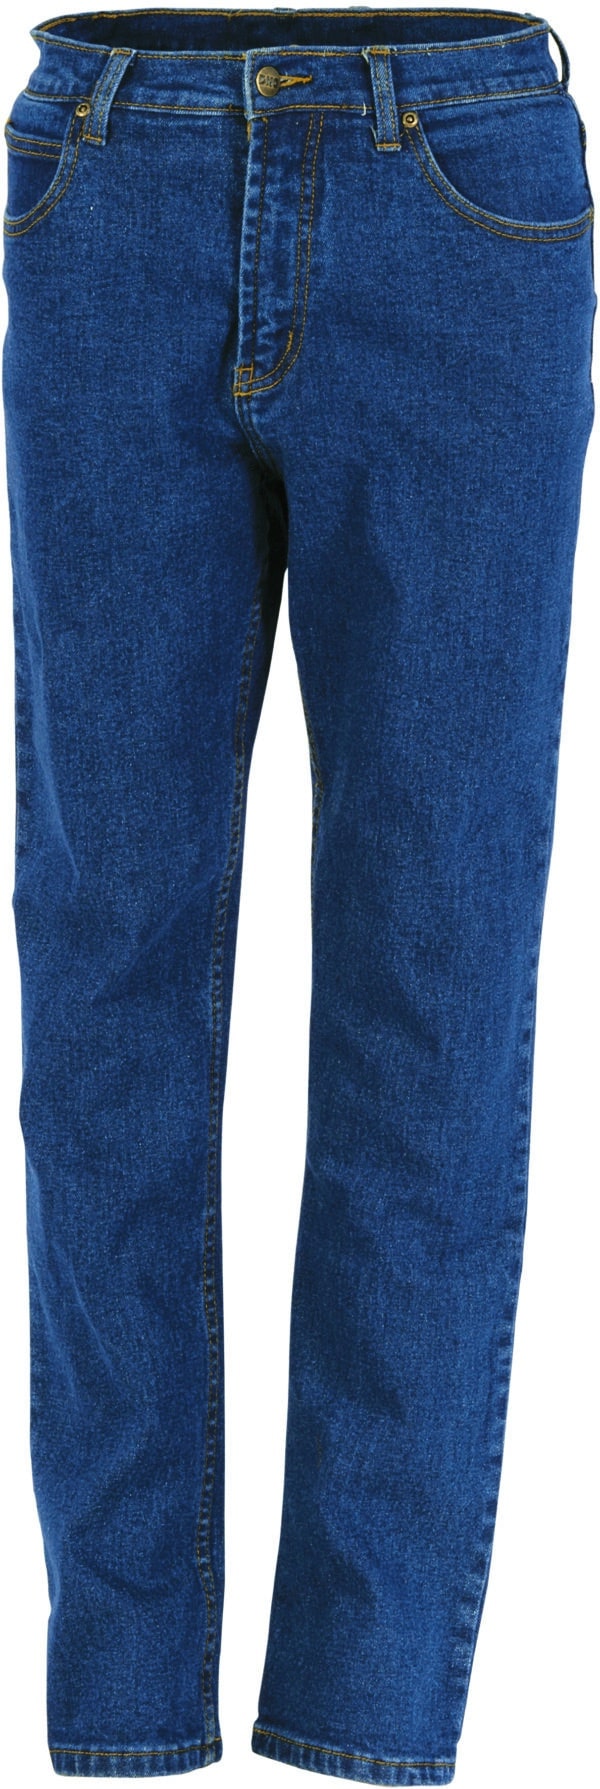 DNC Workwear Ladies Denim Stretch Jeans